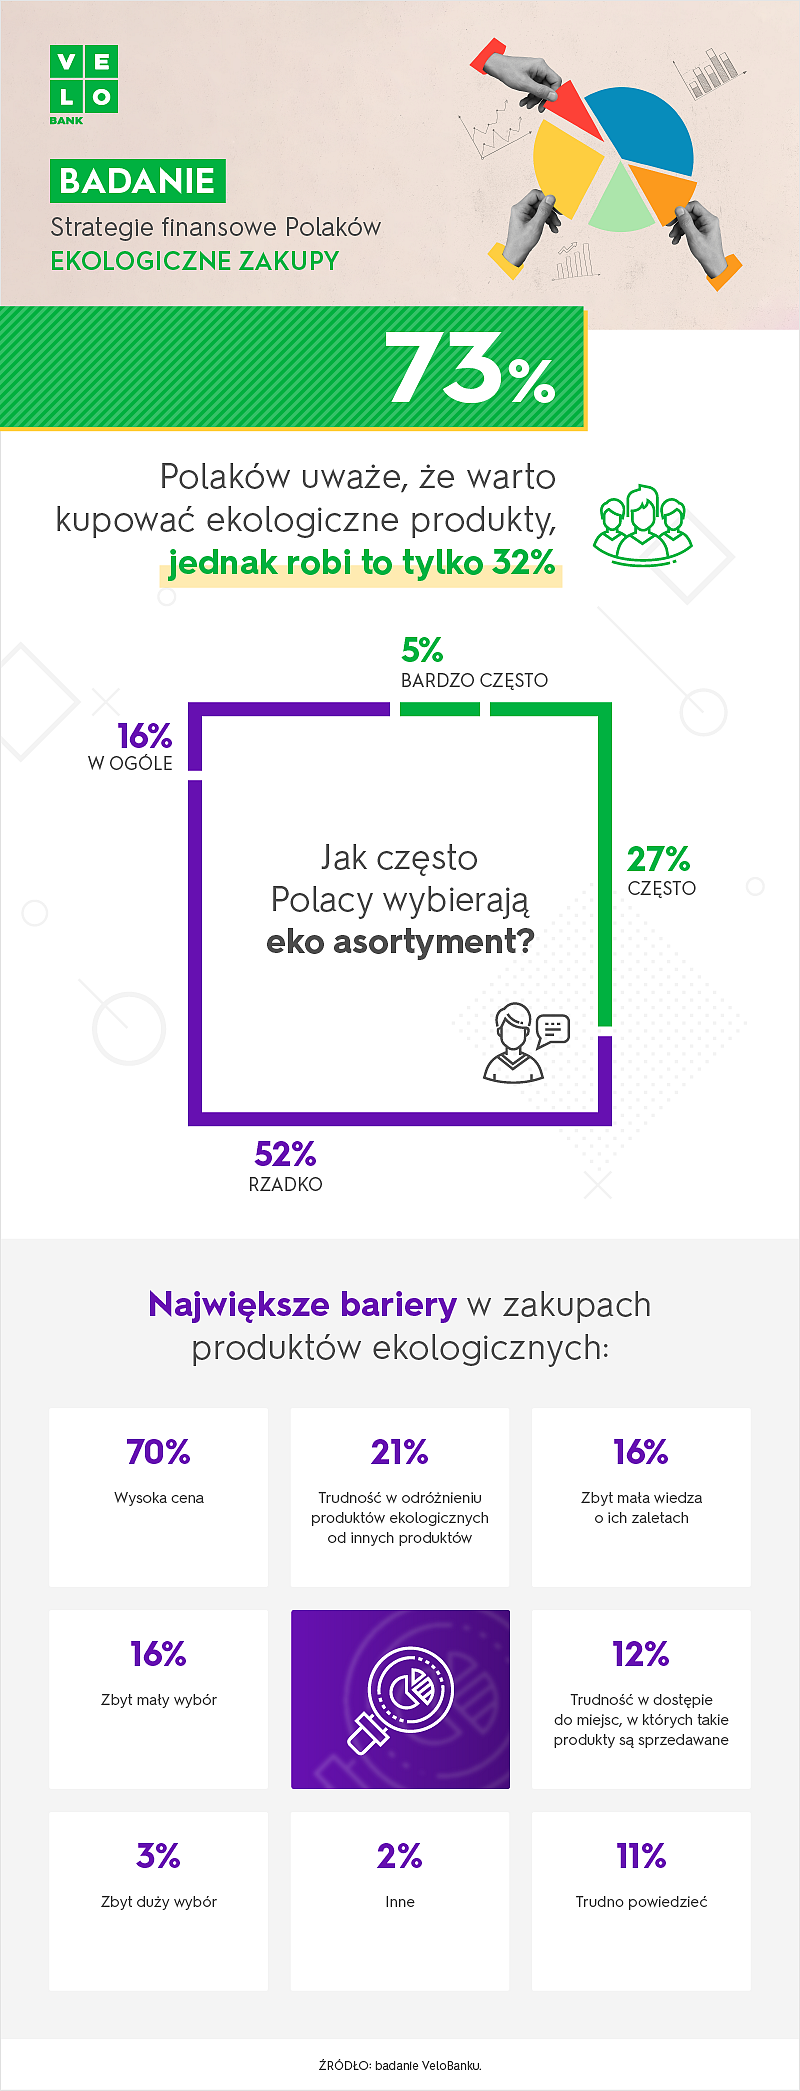 Badanie_Ekologiczne zakupy Polaków.png [340.93 KB]